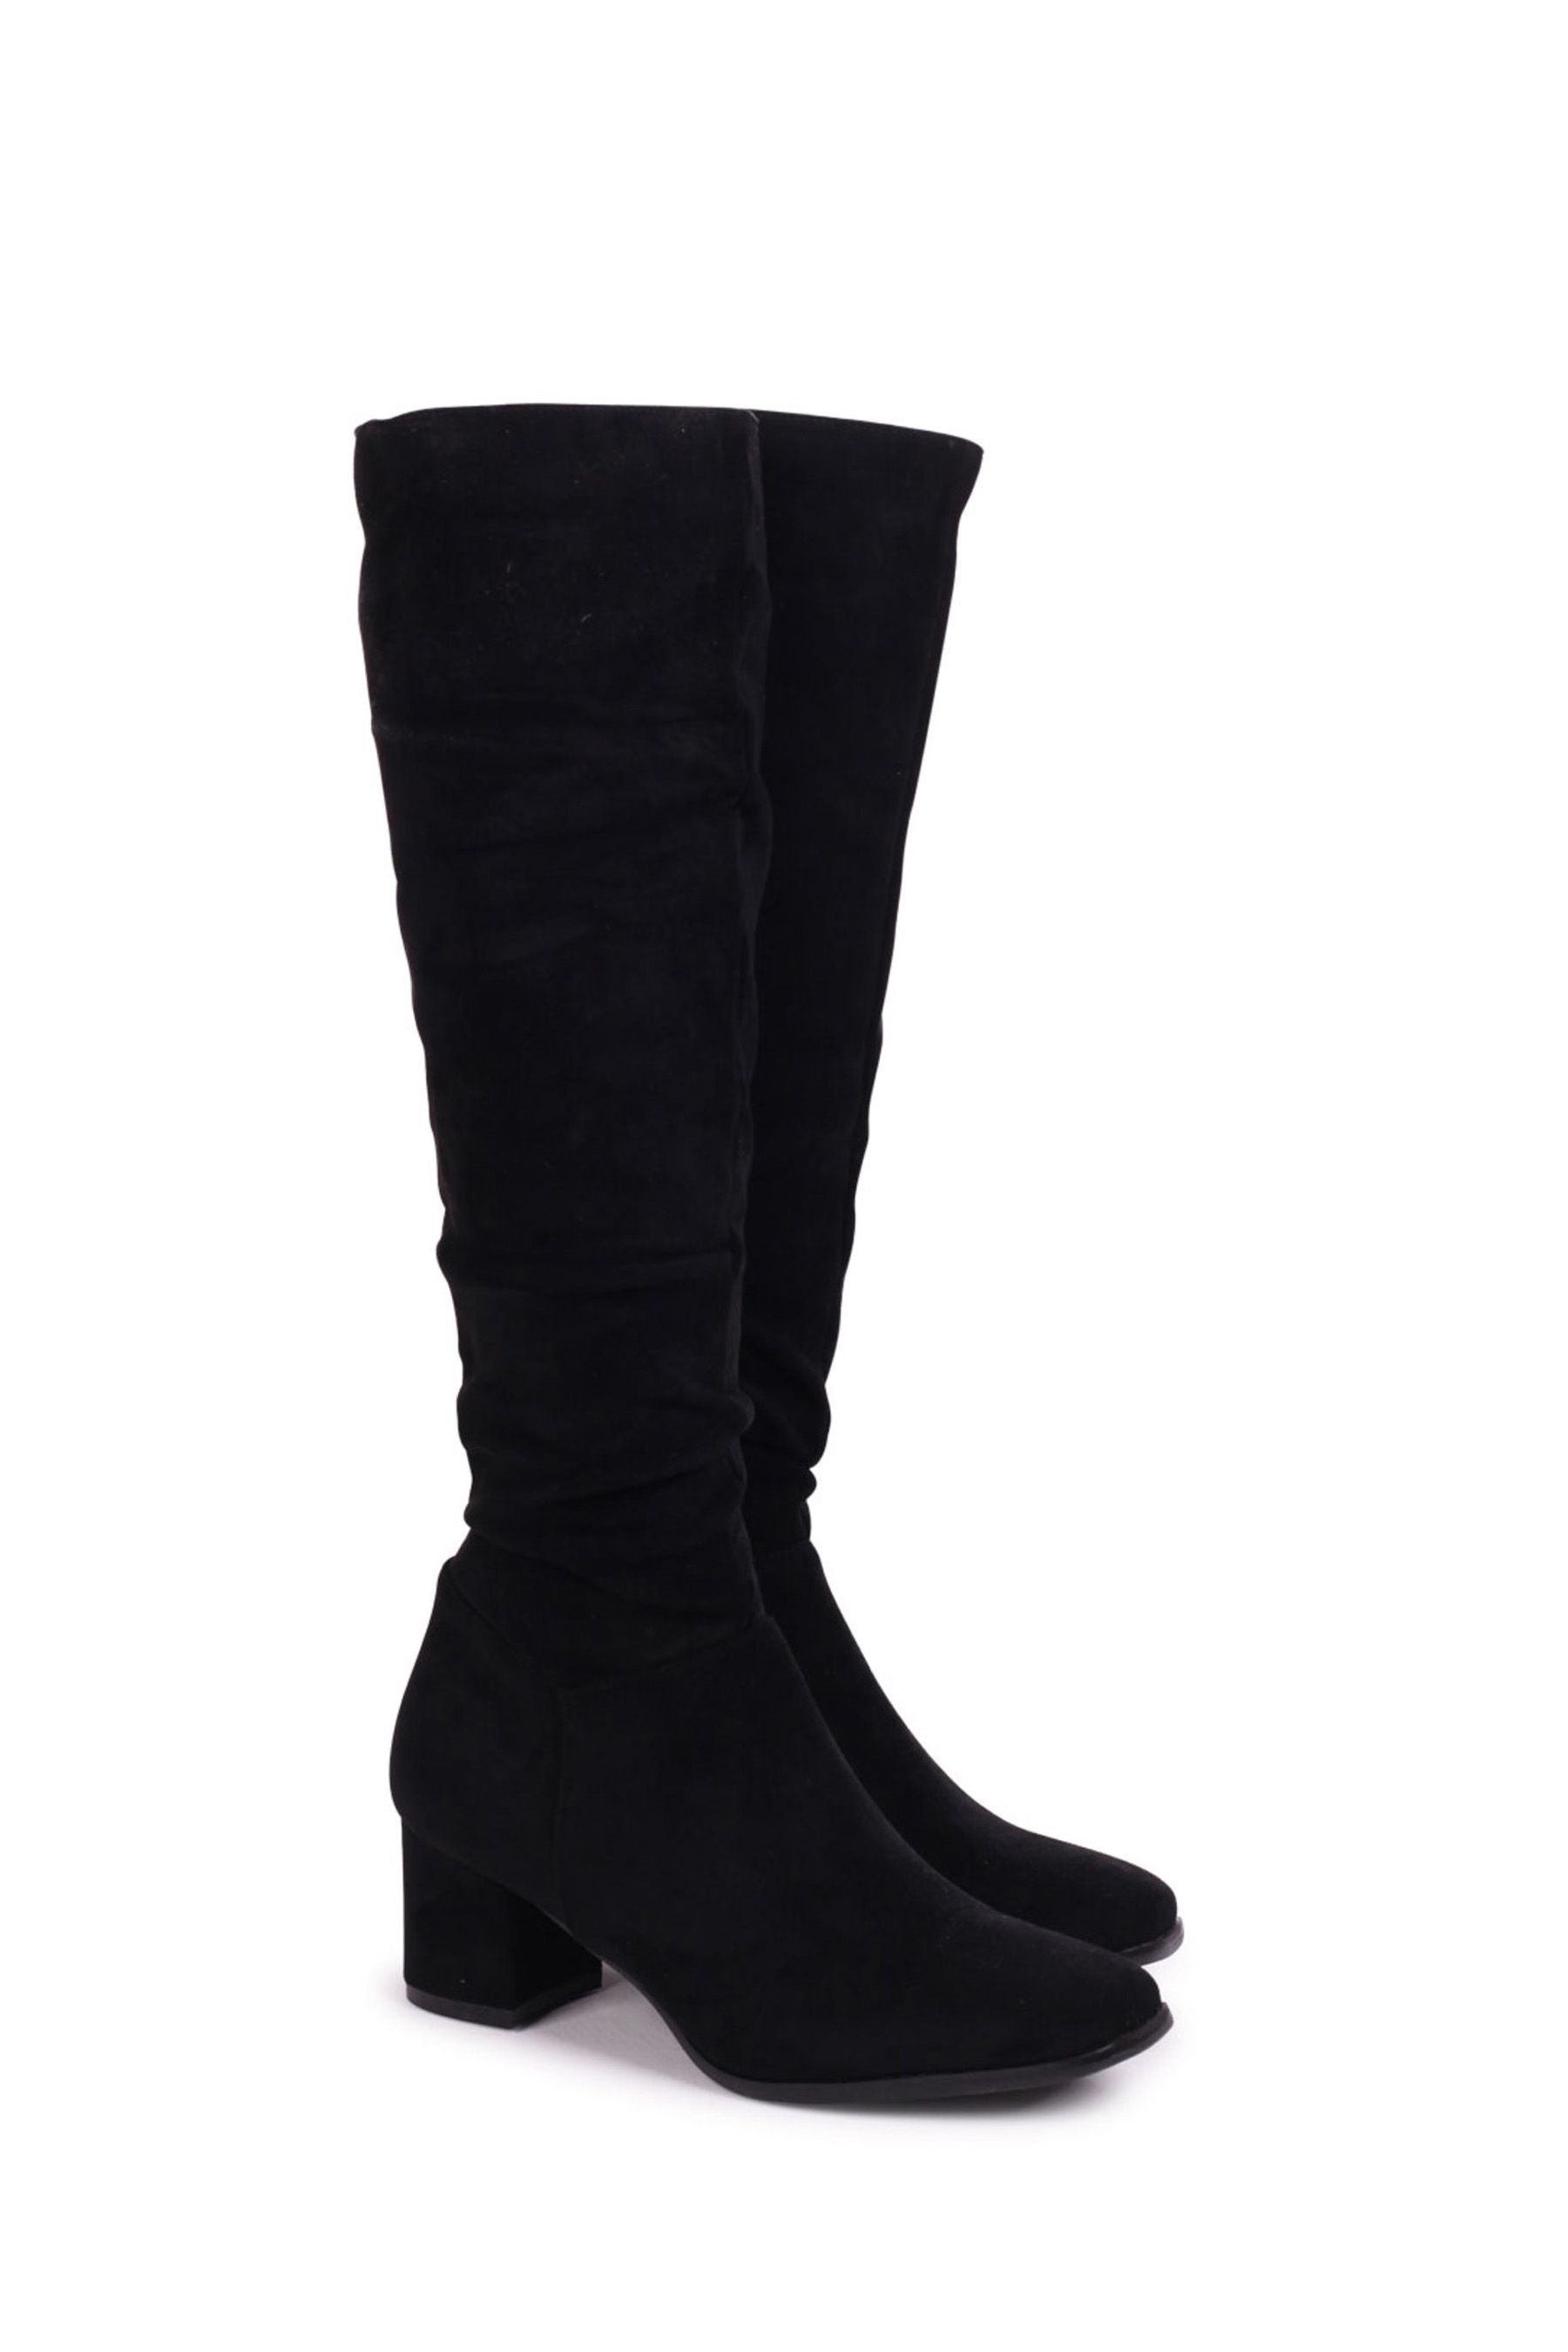 Buy Linzi Black Zena Faux Suede Square Toe Block Heel Knee High Boot ...